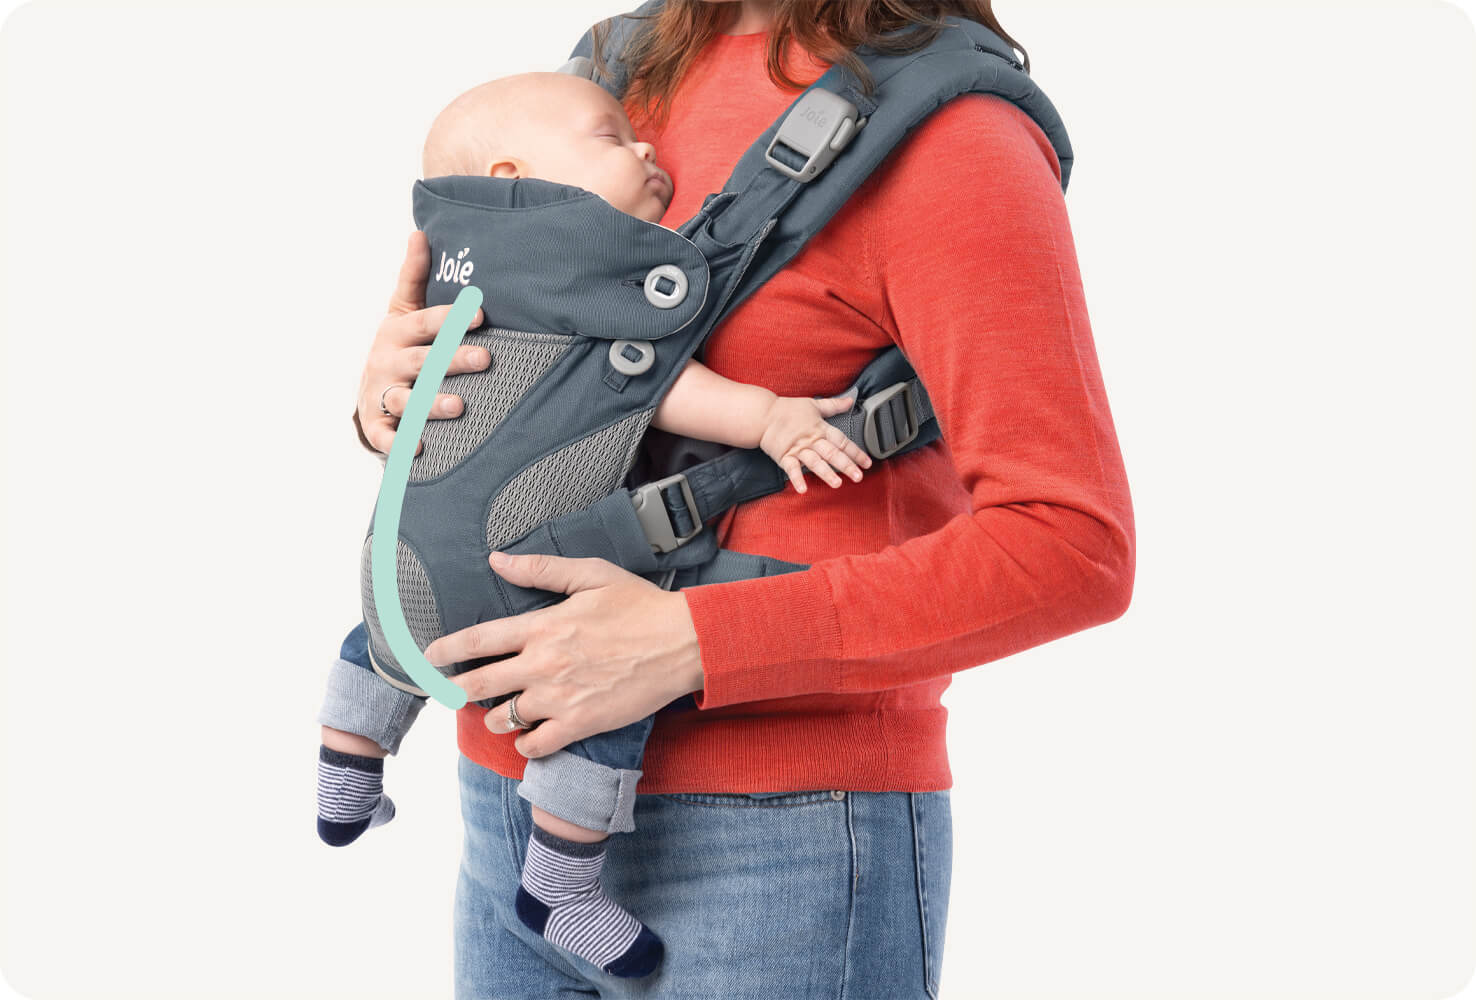 Primer plano de un bebé en una mochila portabebés Joie Savvy 4in1 azul con una línea color verde menta que indica la forma de C de la columna vertebral del bebé